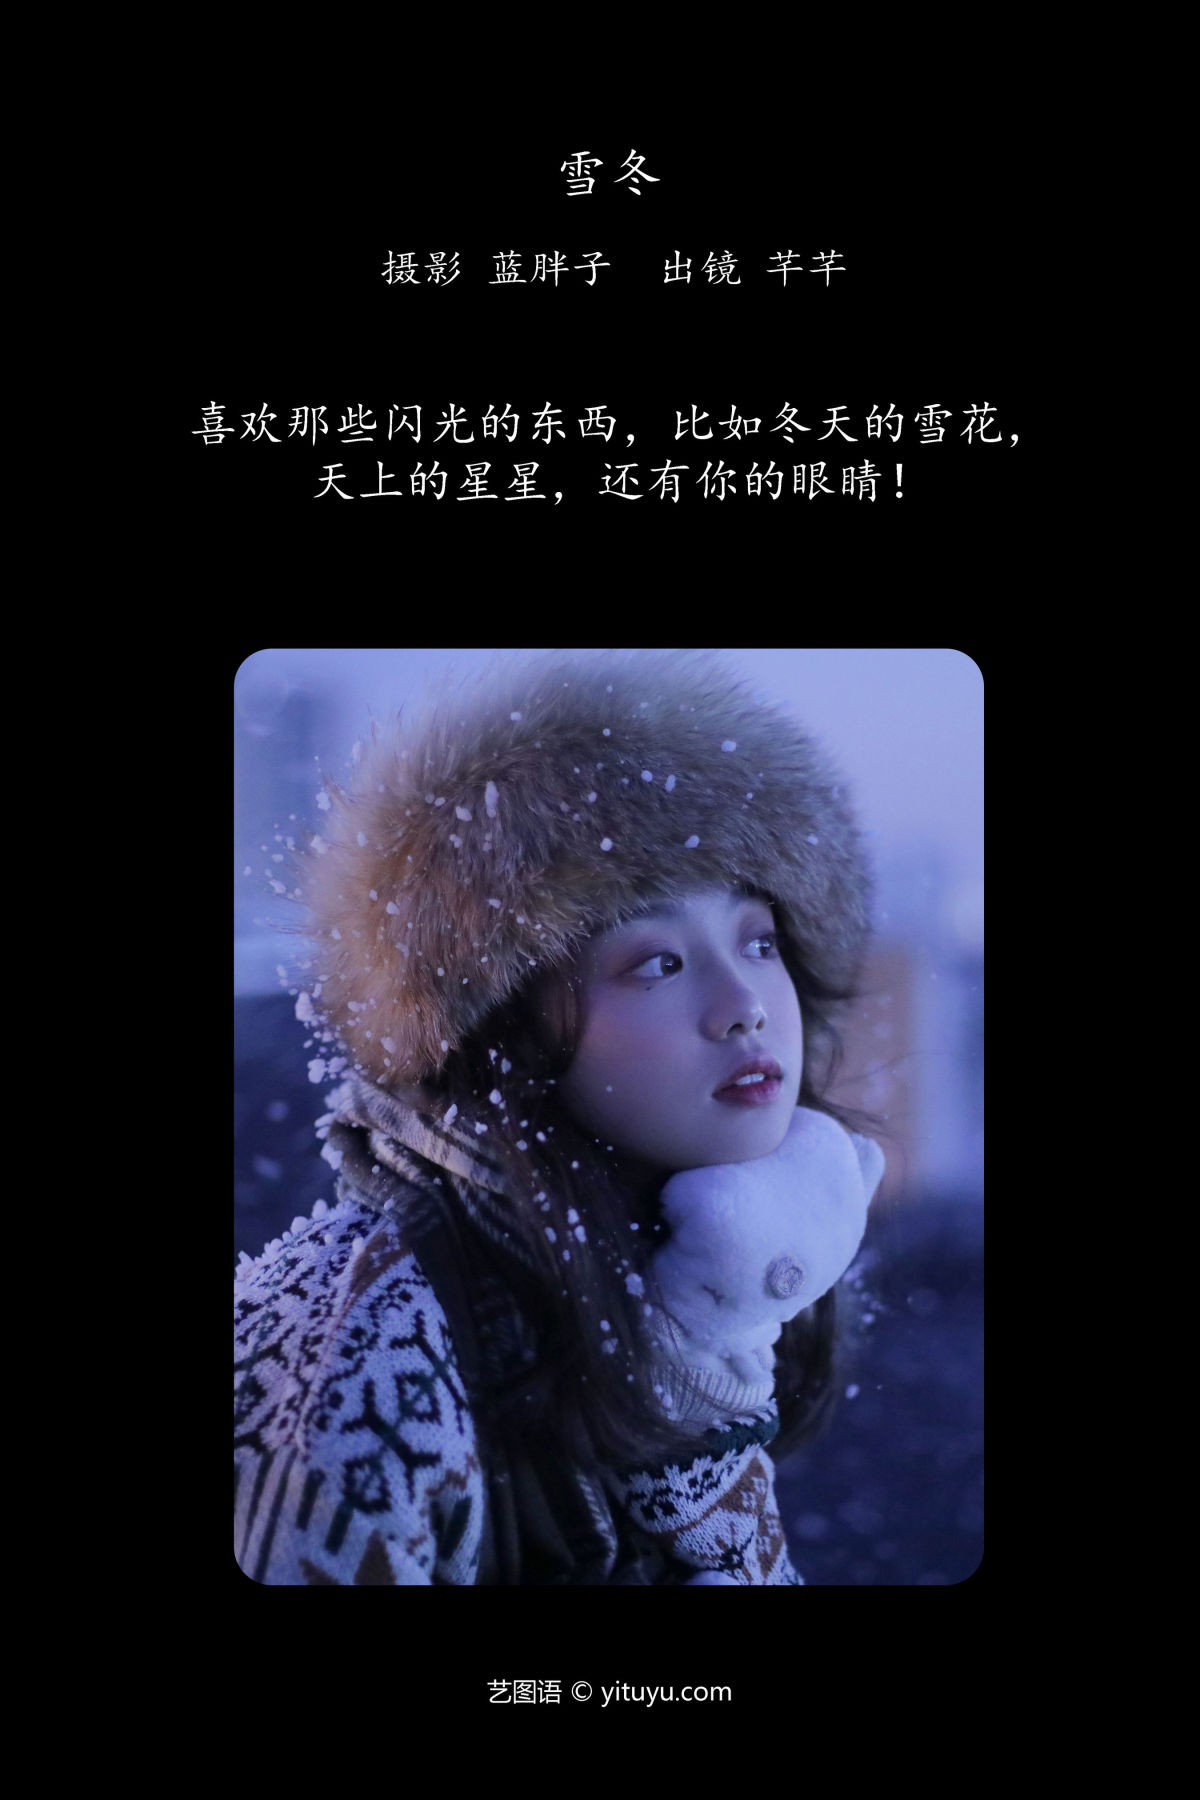 蓝胖子_芊芊《雪冬》美图作品图片2